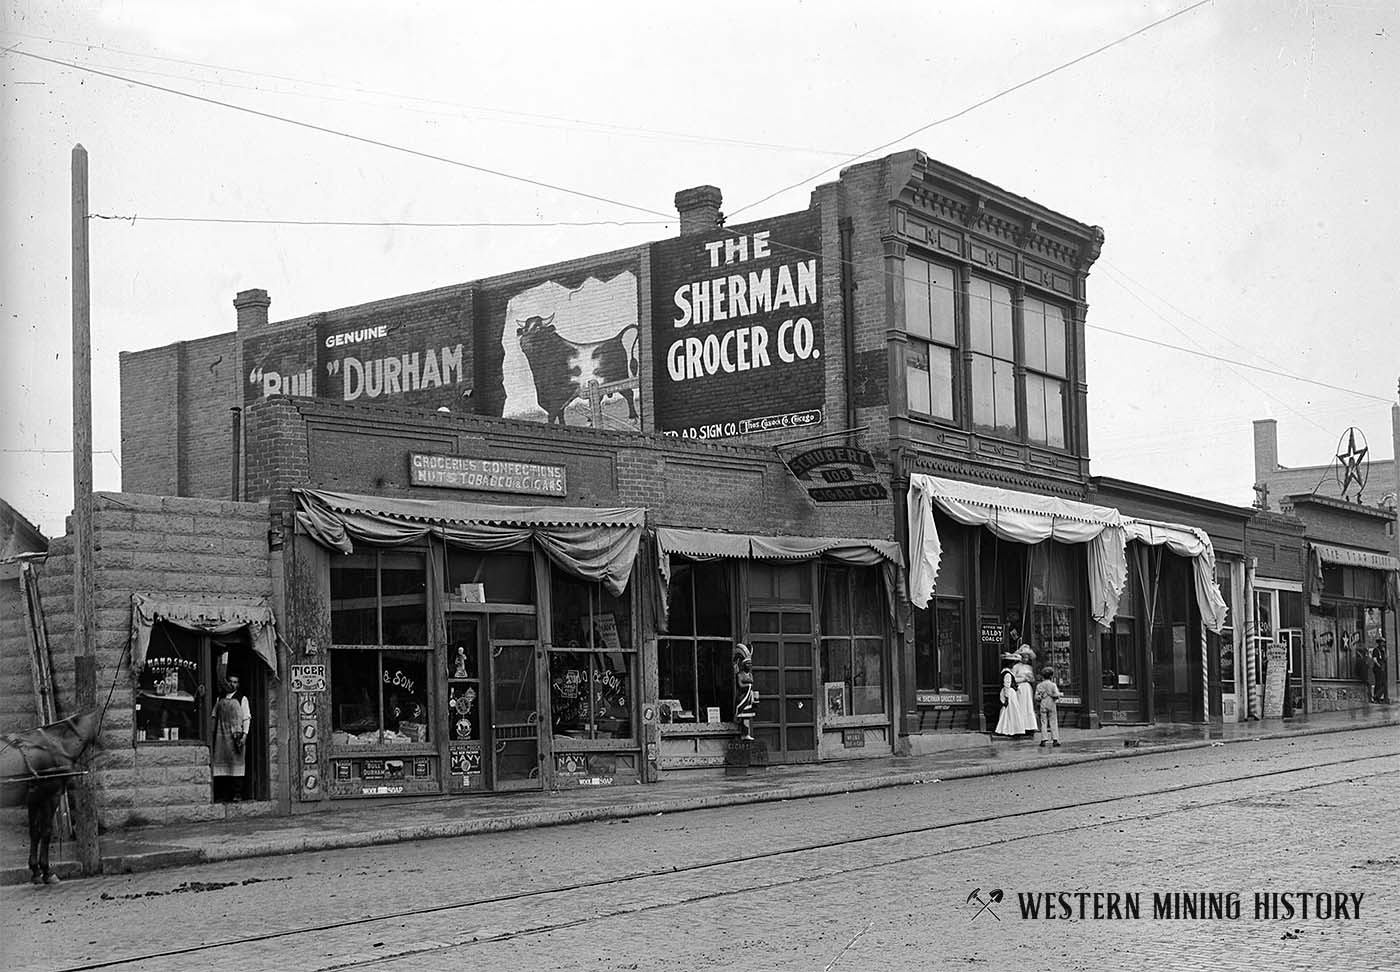 Trinidad, Colorado street scene ca. 1880s